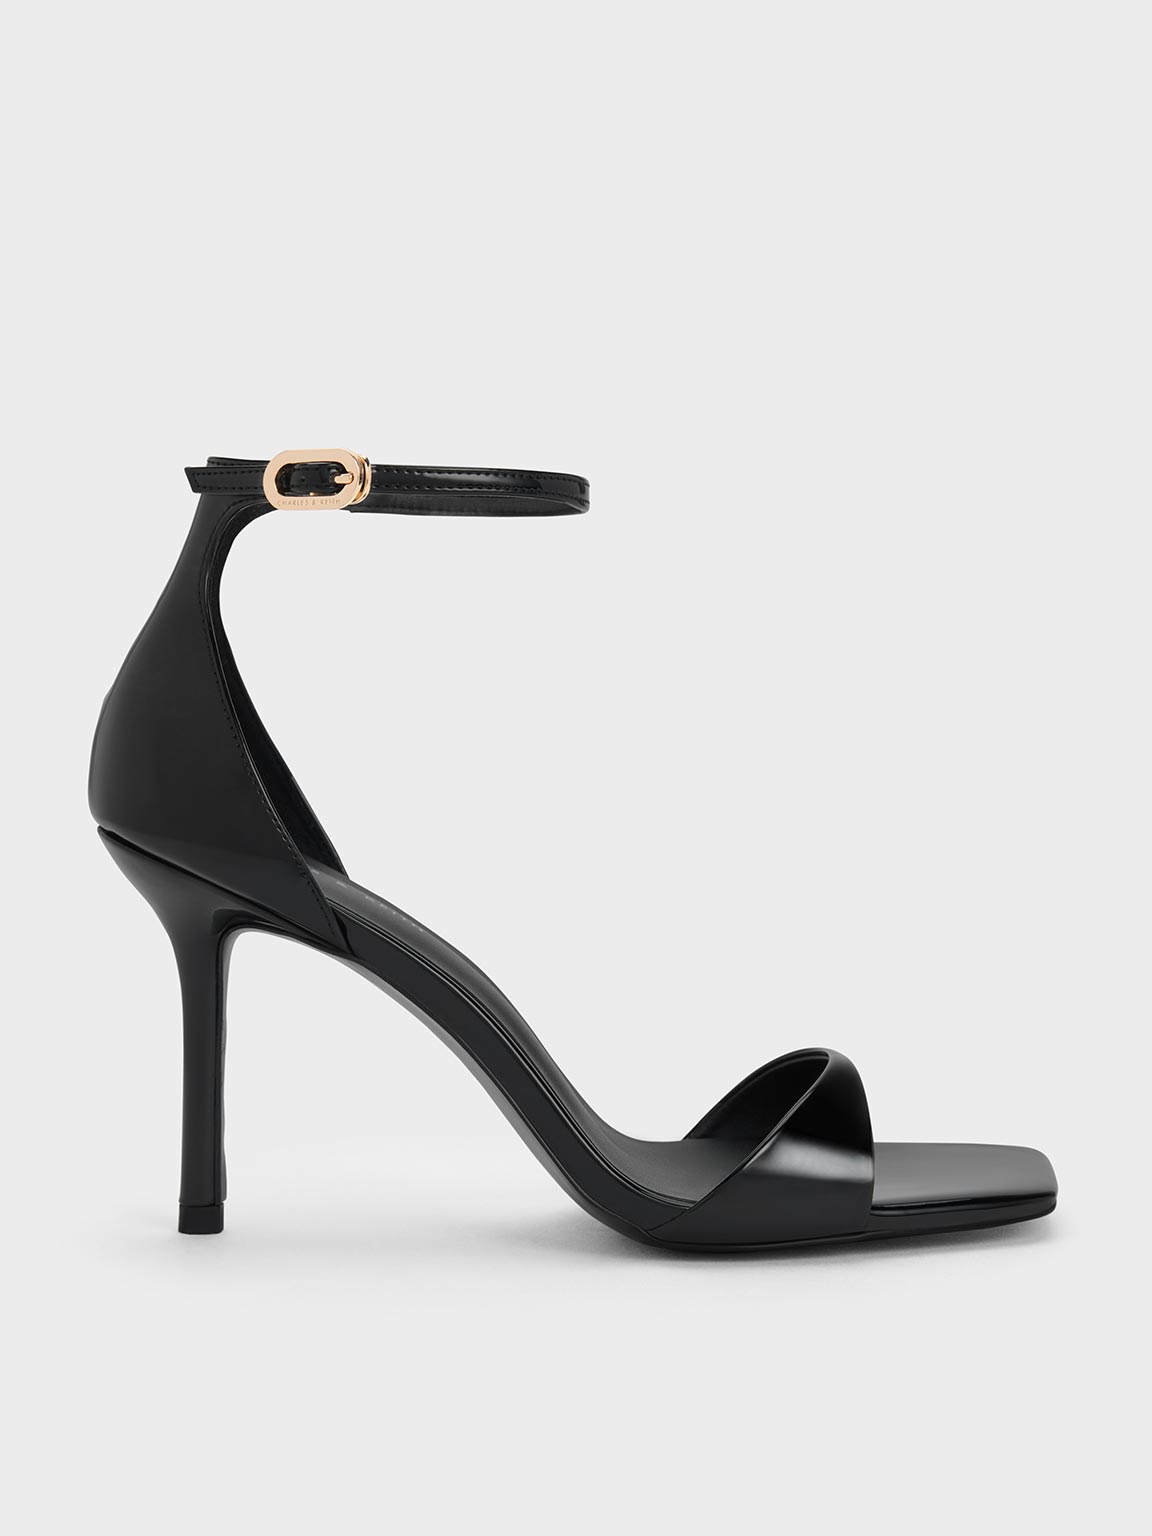 Heels | Buy Heels Online in India - W for Woman